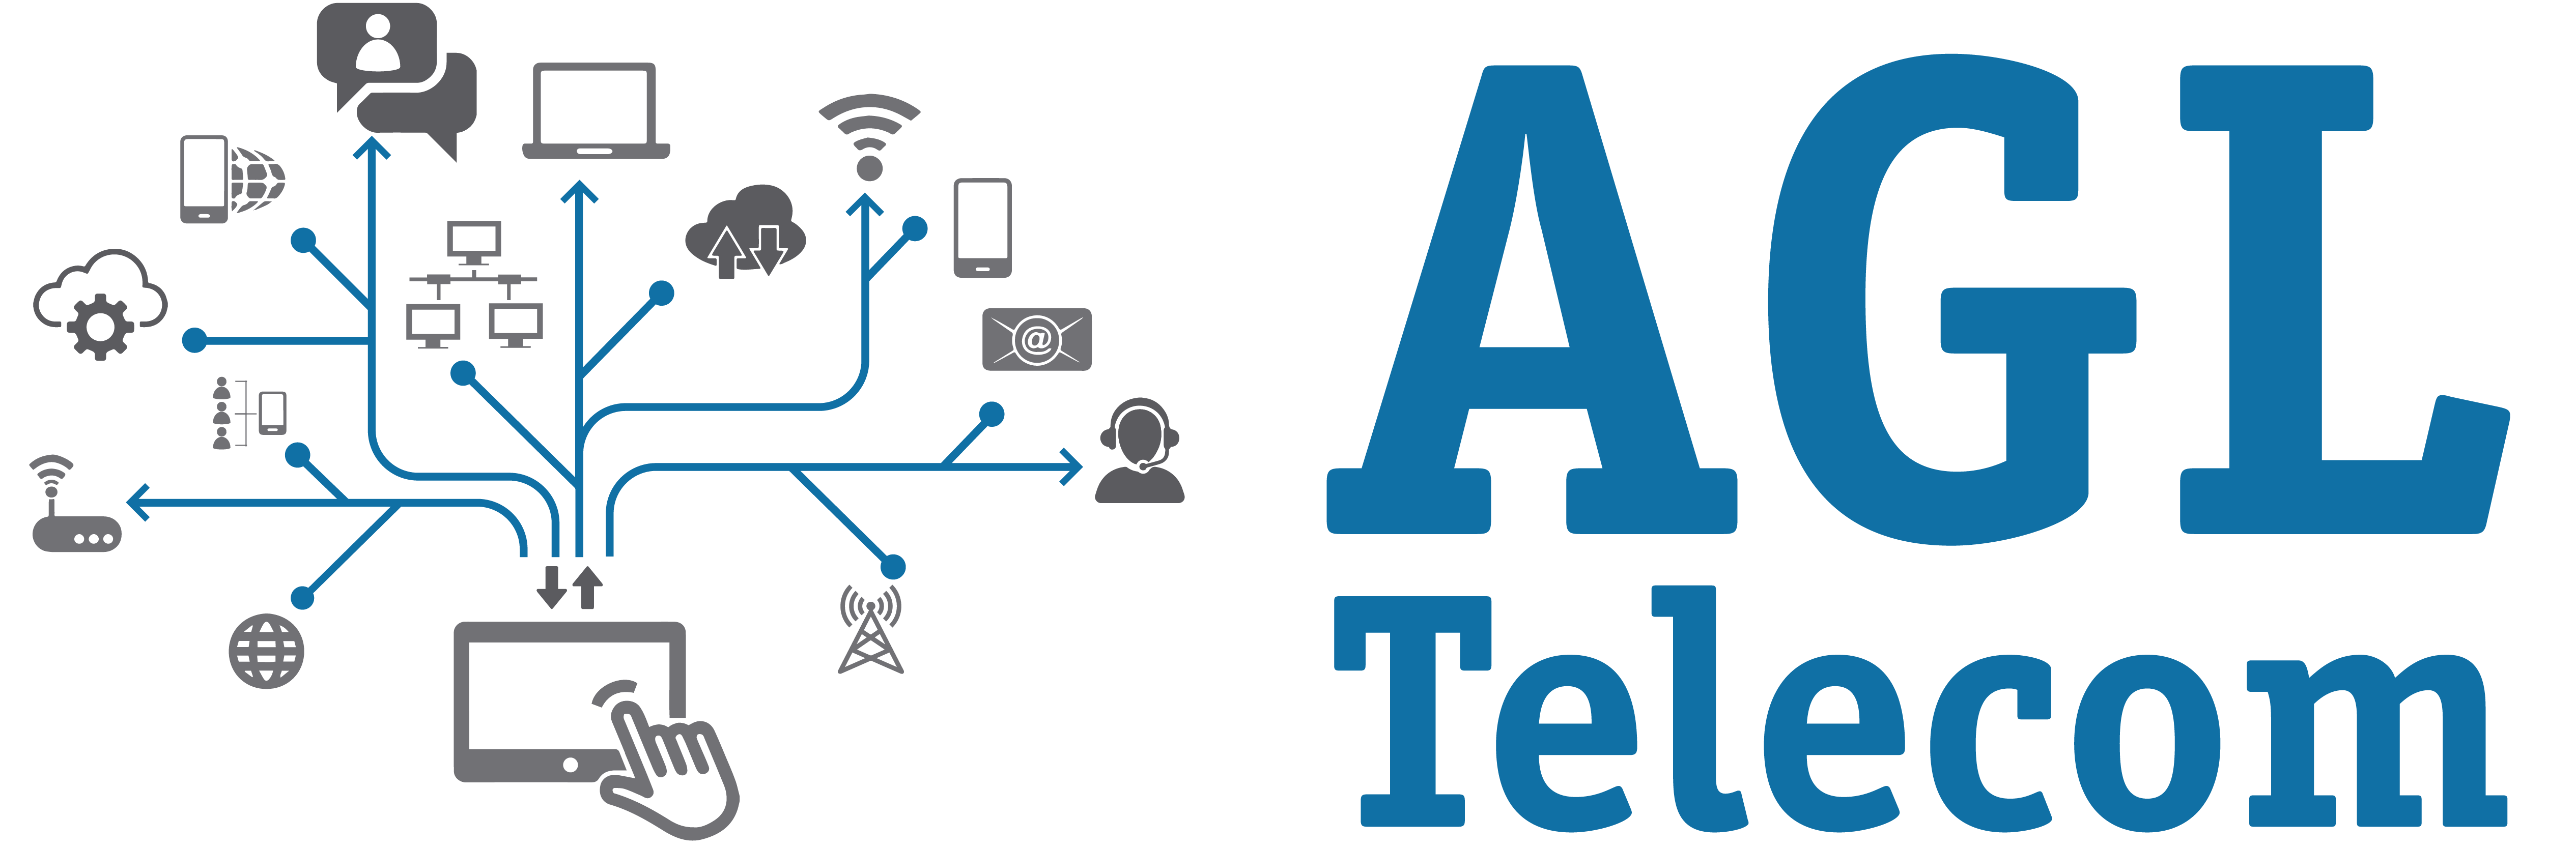 AglTelecom